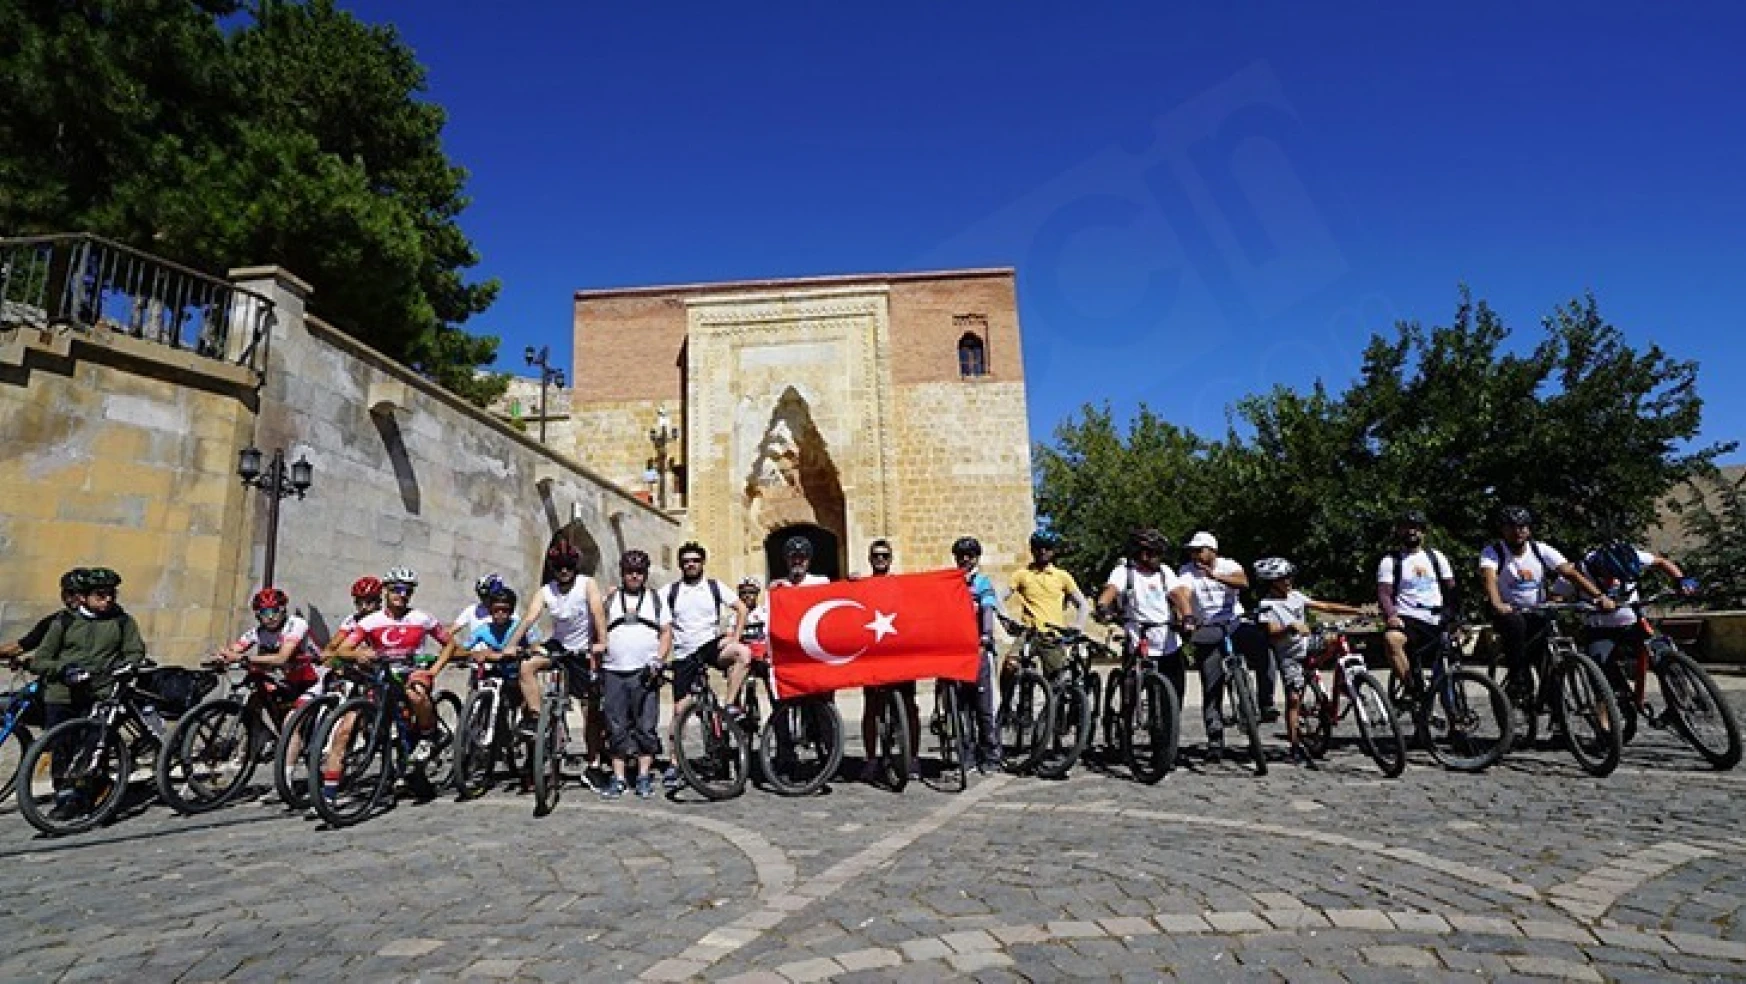 Bisikletle Keşfet Derneği Kahramanmaraş'ta